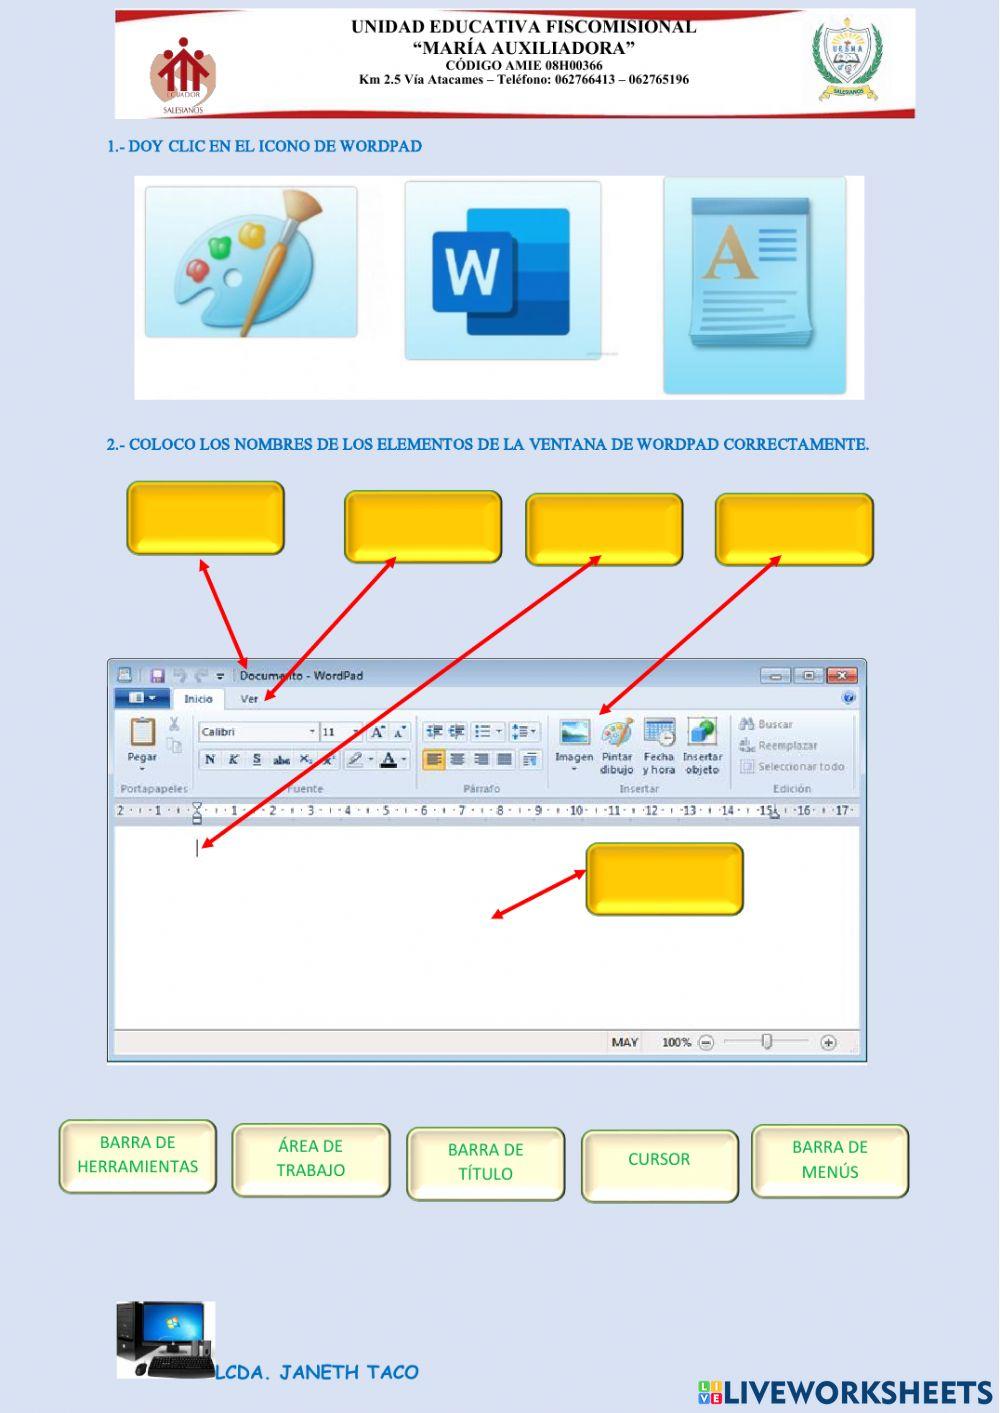 Los elementos de la ventana de wordpad